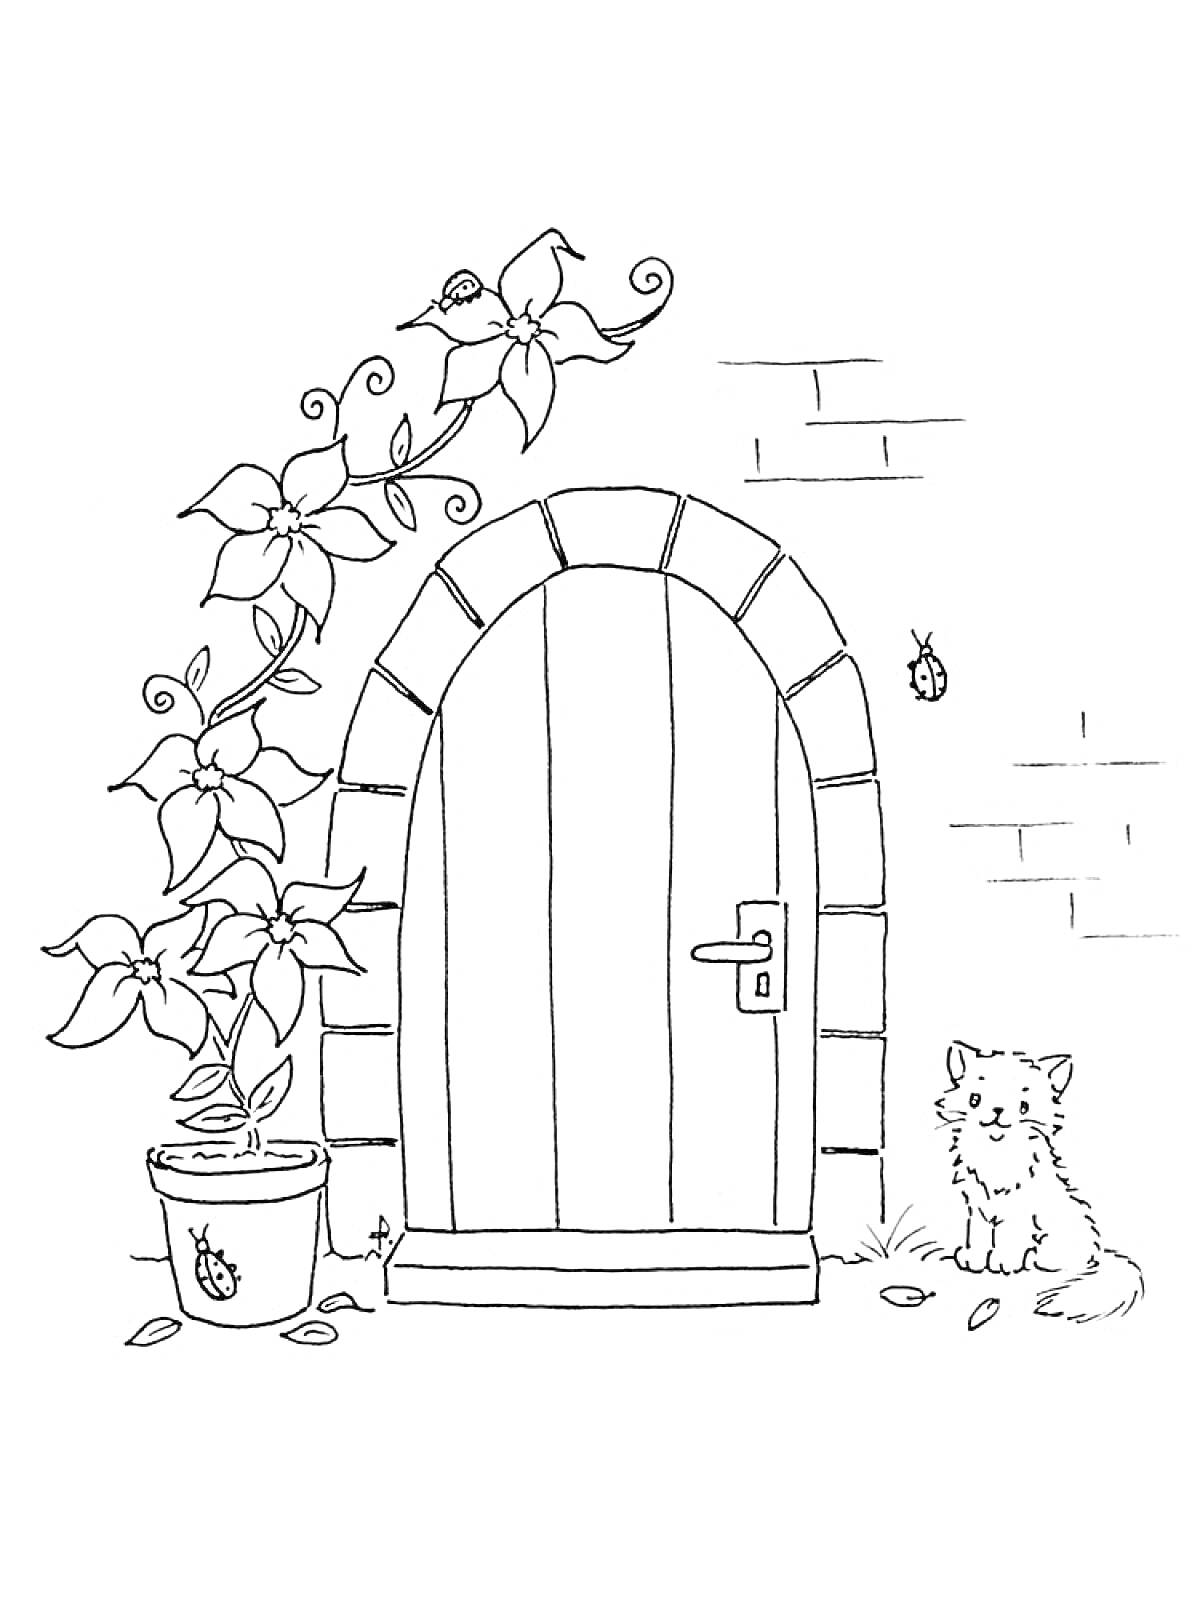 РаскраскаДверь с аркой, горшком с растением, бабочкой и собакой